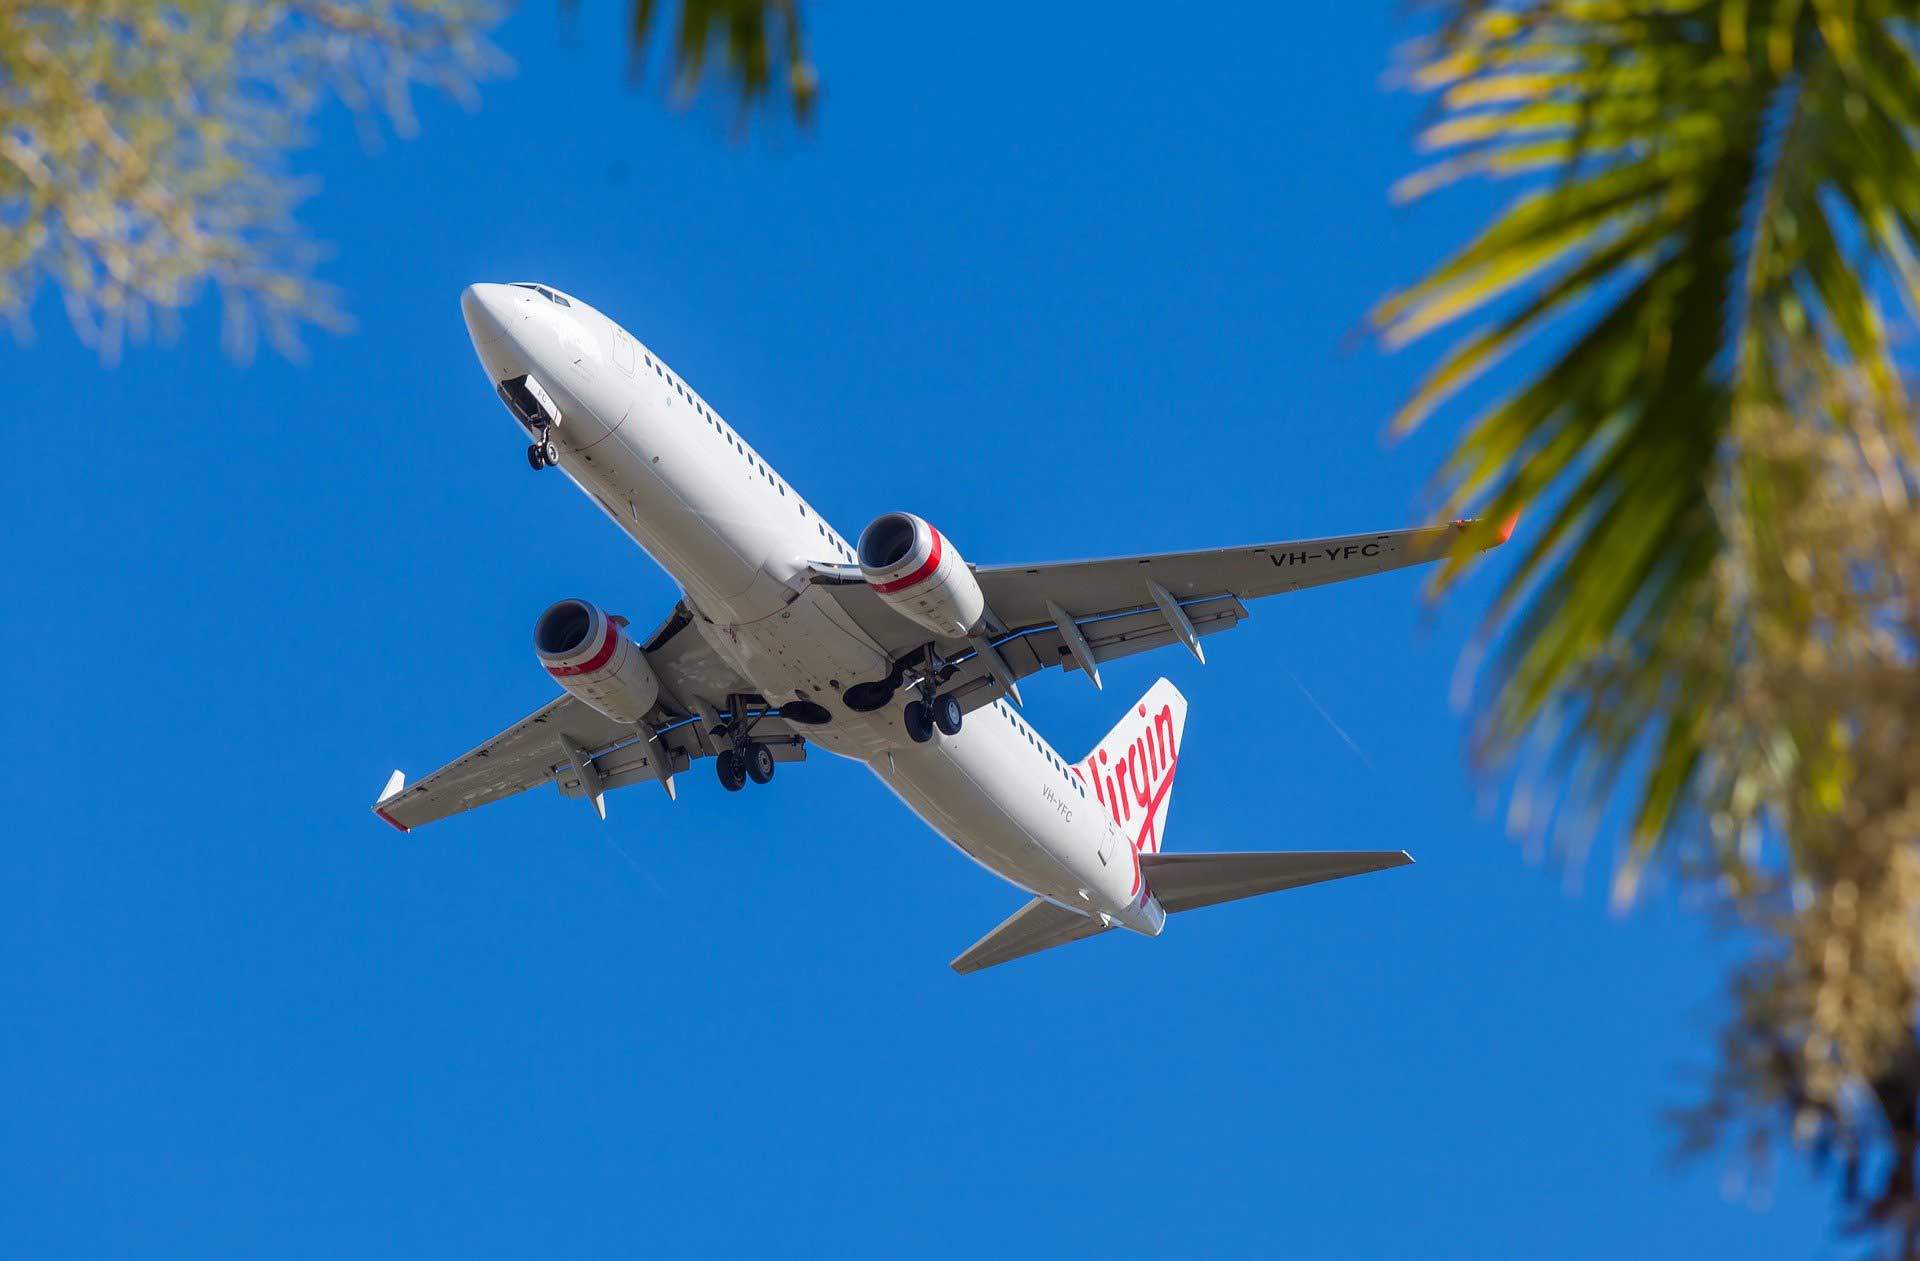 Flugzeug von Virgin America in der Luft